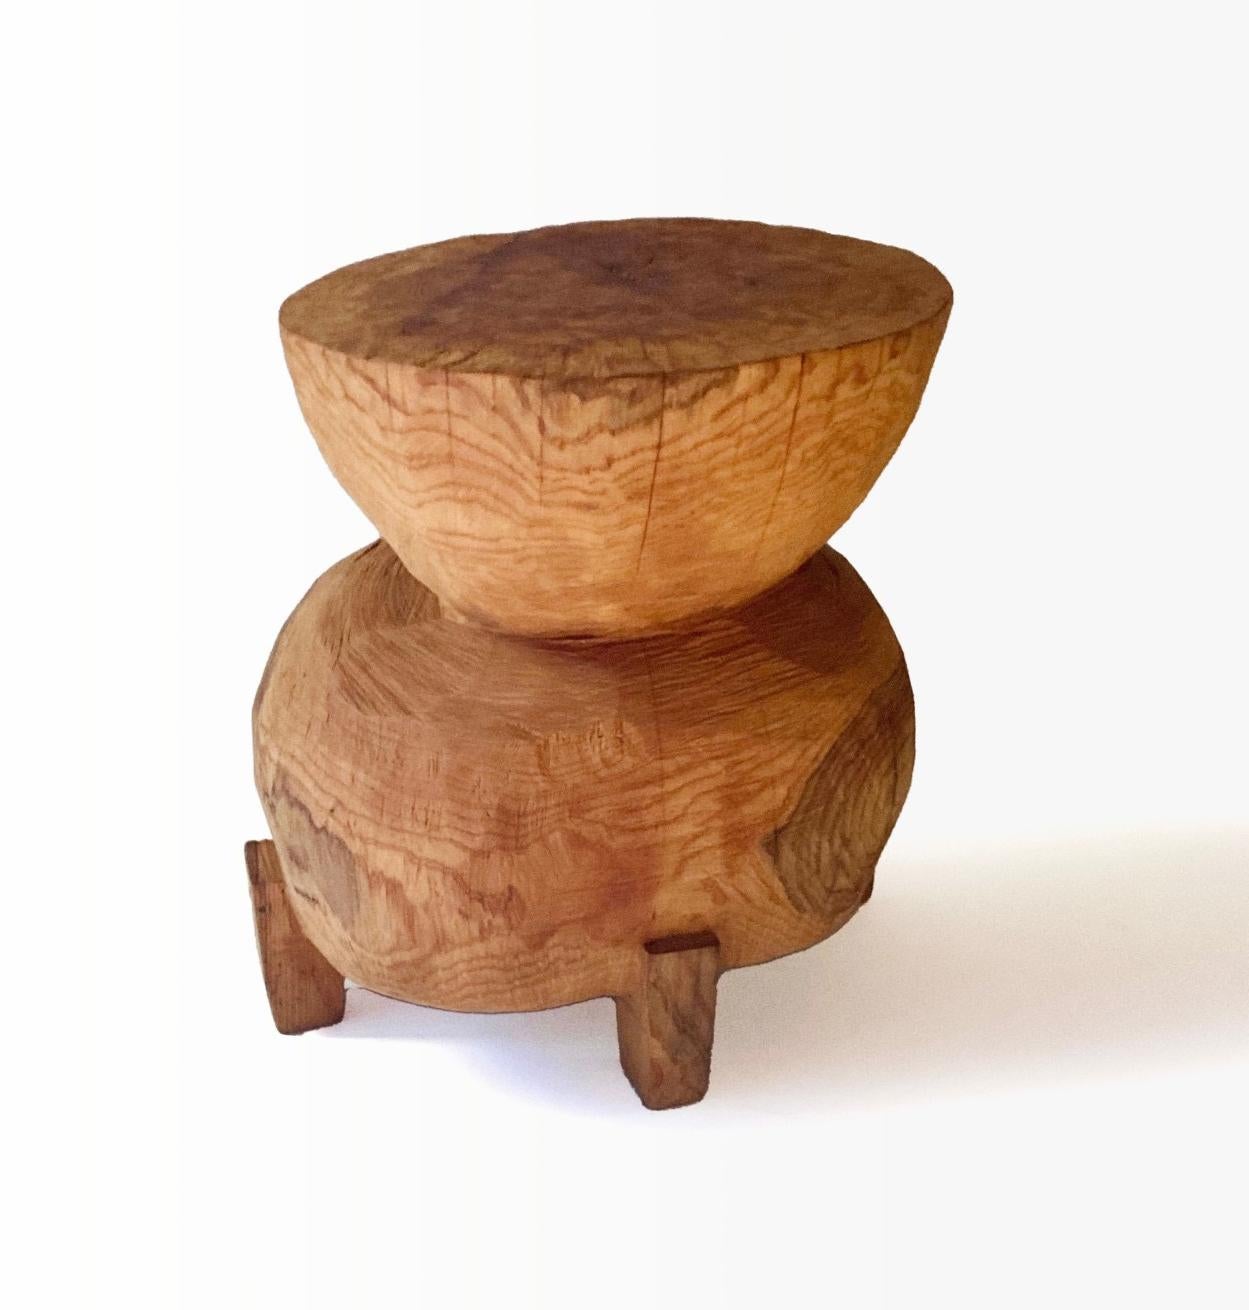 Name: Miminashi
Skulpturaler Hocker von Hiroyuki Nishimura und geschnitzte Möbel von Zougei
MATERIAL: Kirsche
Diese Arbeit wird mit einigen Arten von Kettensägen aus Holz geschnitzt.
Das meiste Holz, das für Nishimuras Werke verwendet wird, ist